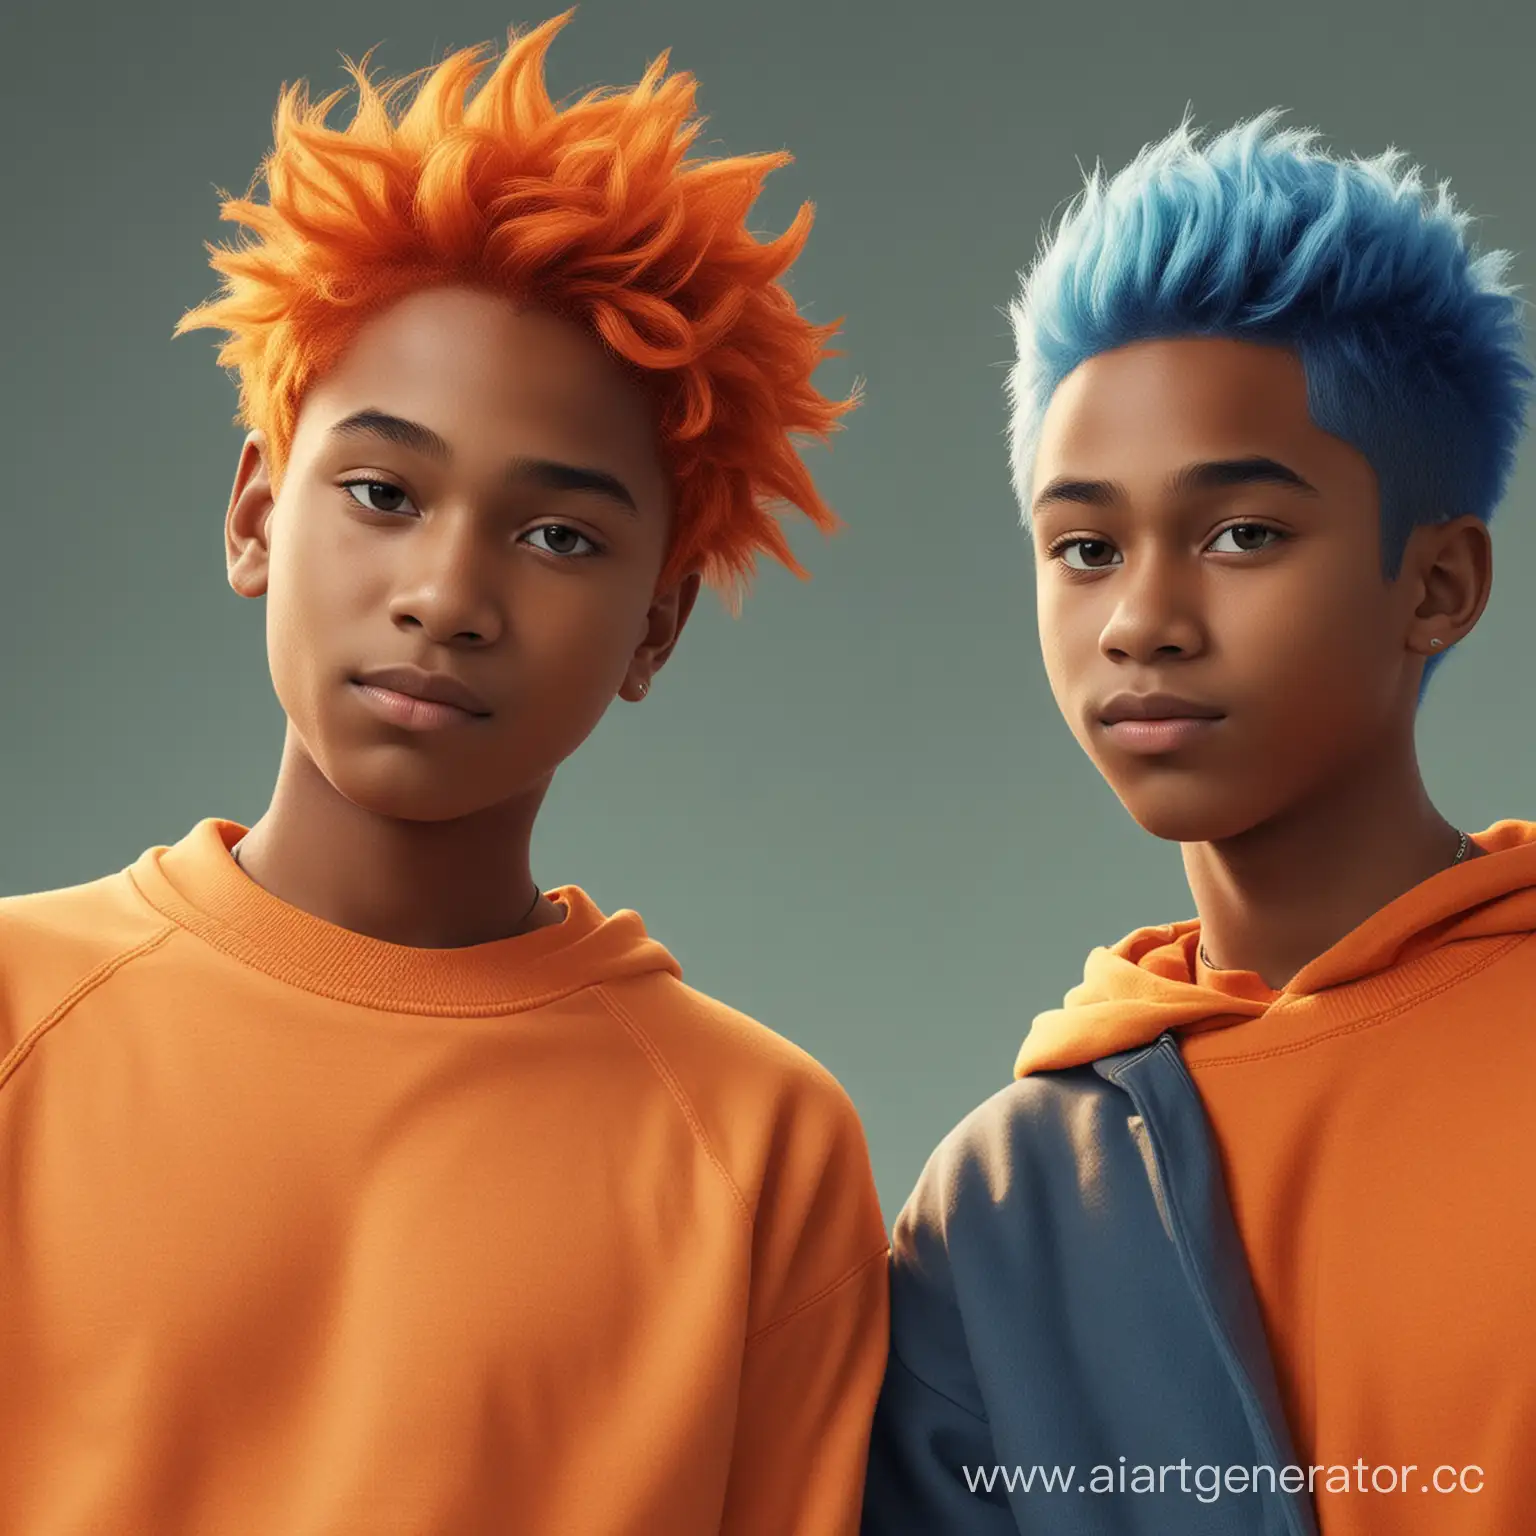 Темнокожий мальчик с рыжими волосами и в оранжевой толстовке и светлокожий мальчик с голубыми волосами